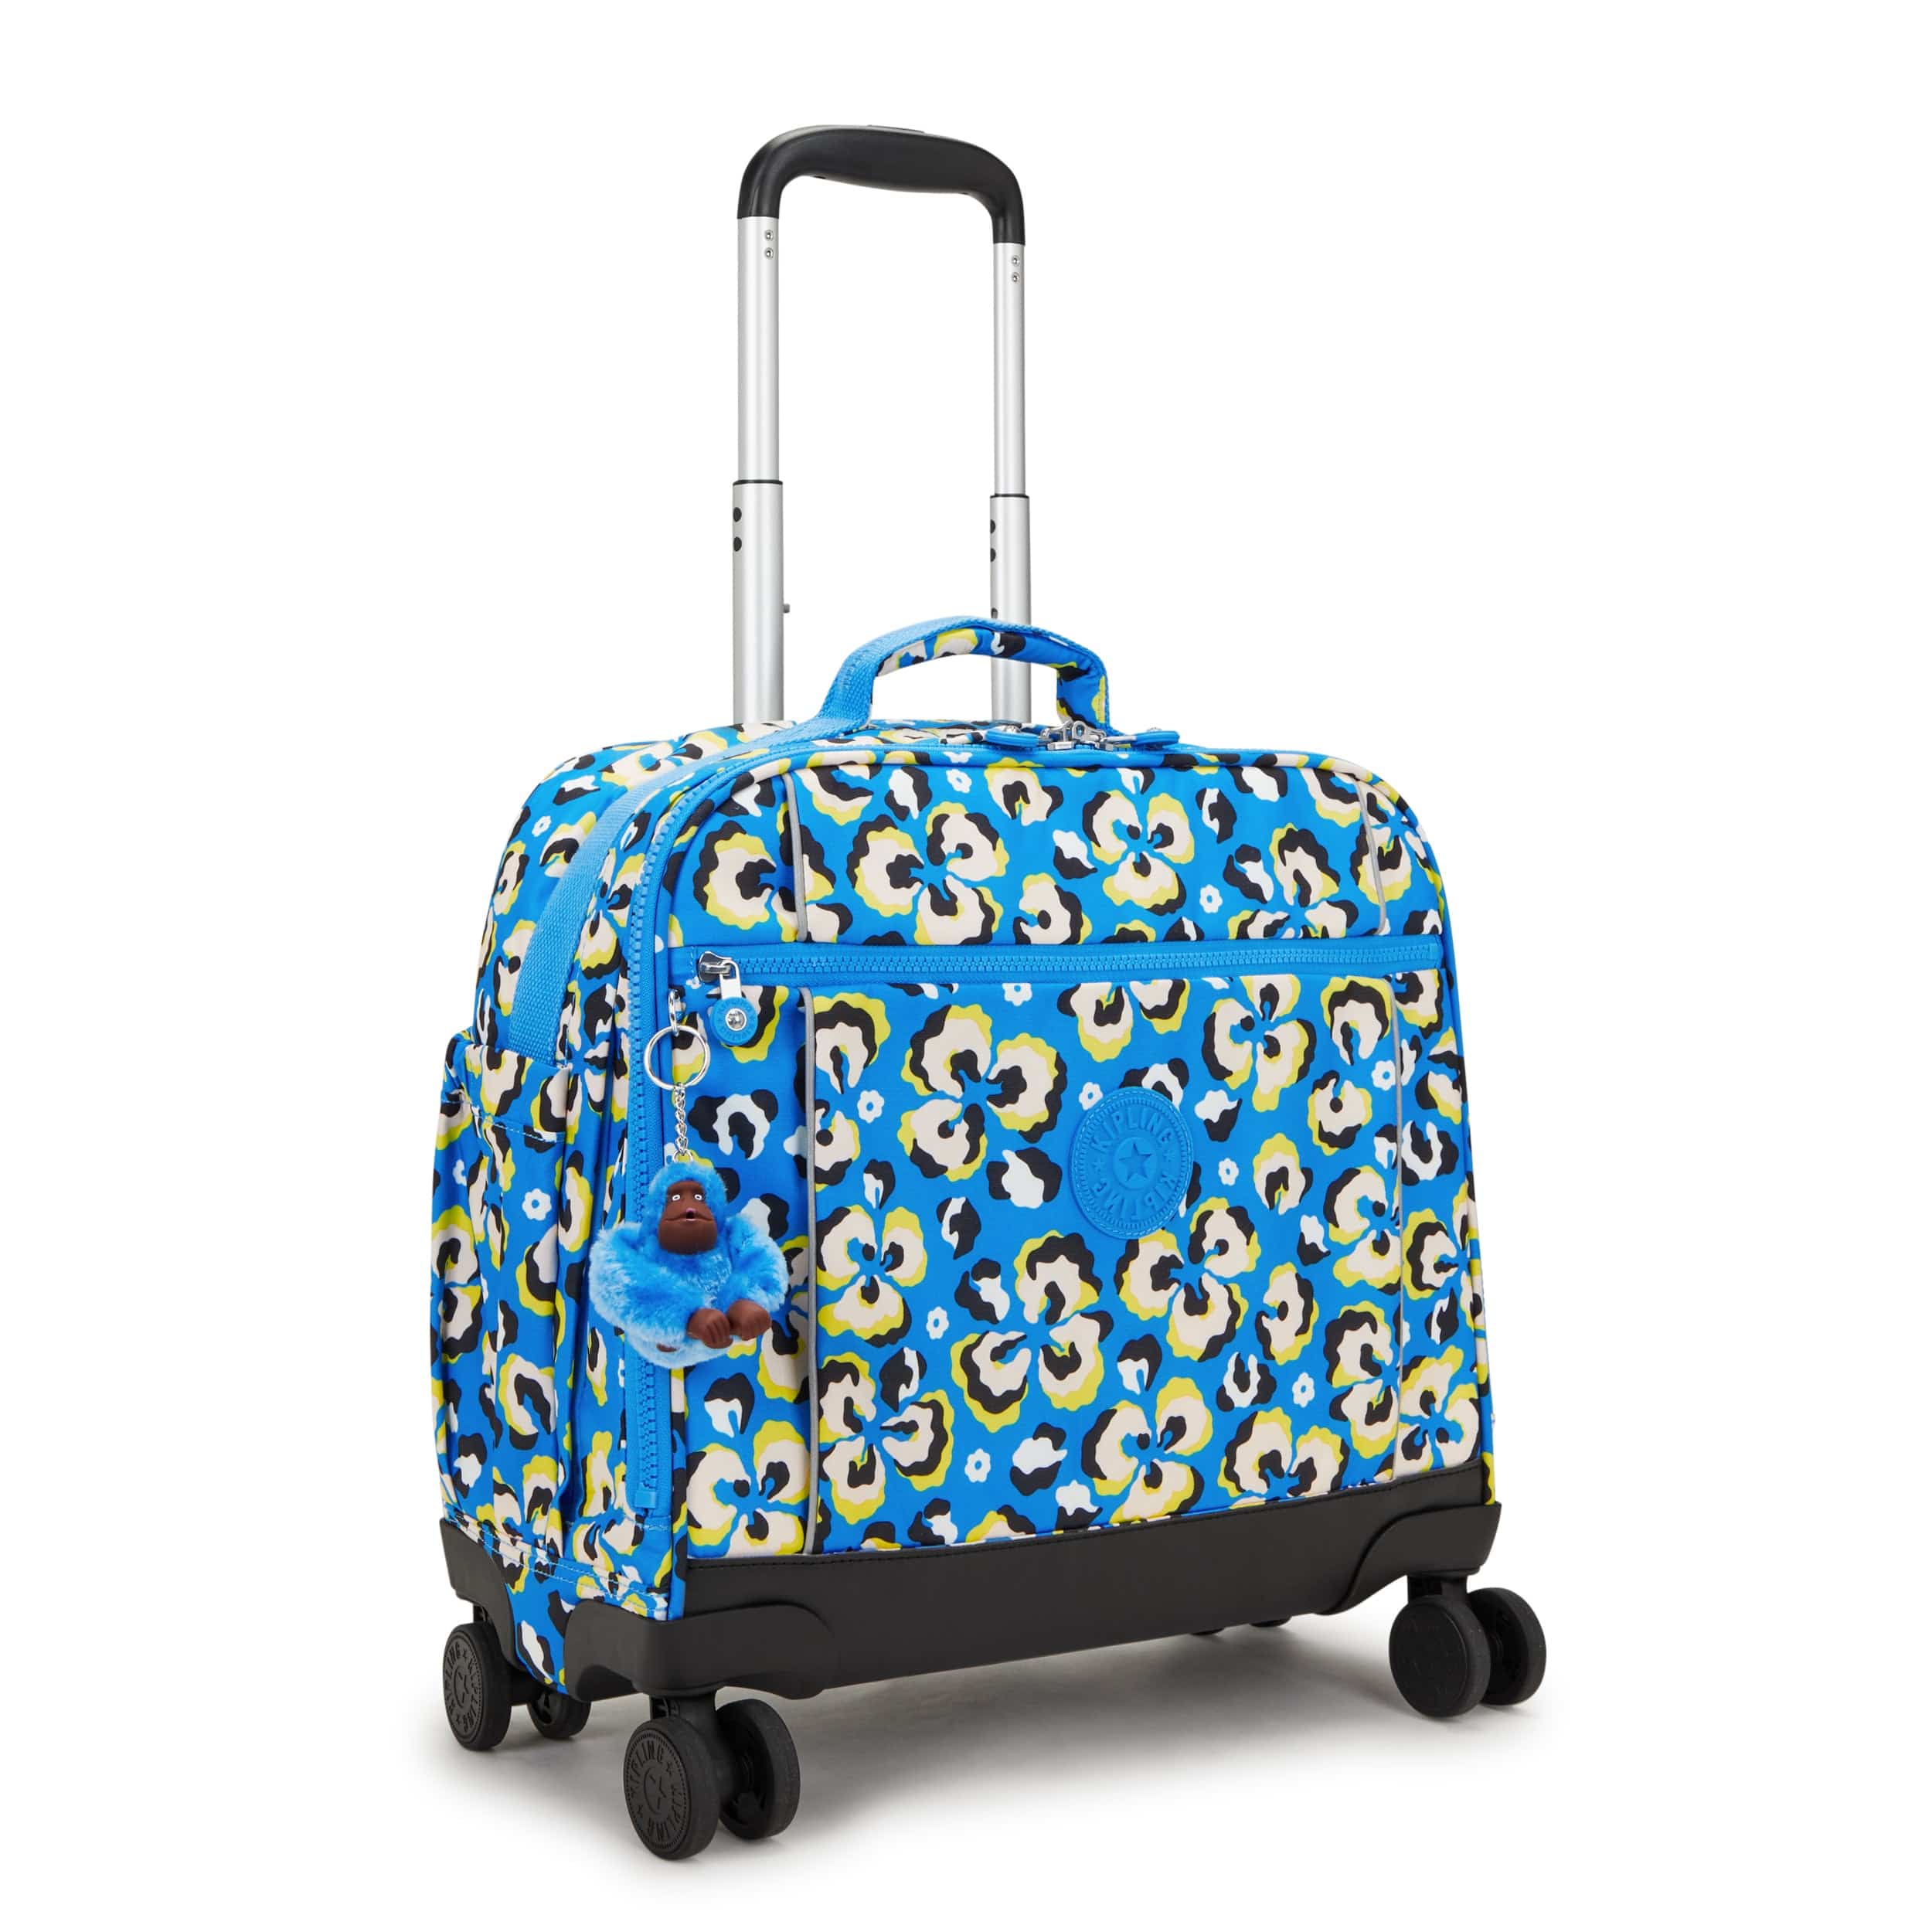 Kipling-New Storia-Large Wheeled Bag-Leopard Floral-I4847-P2A